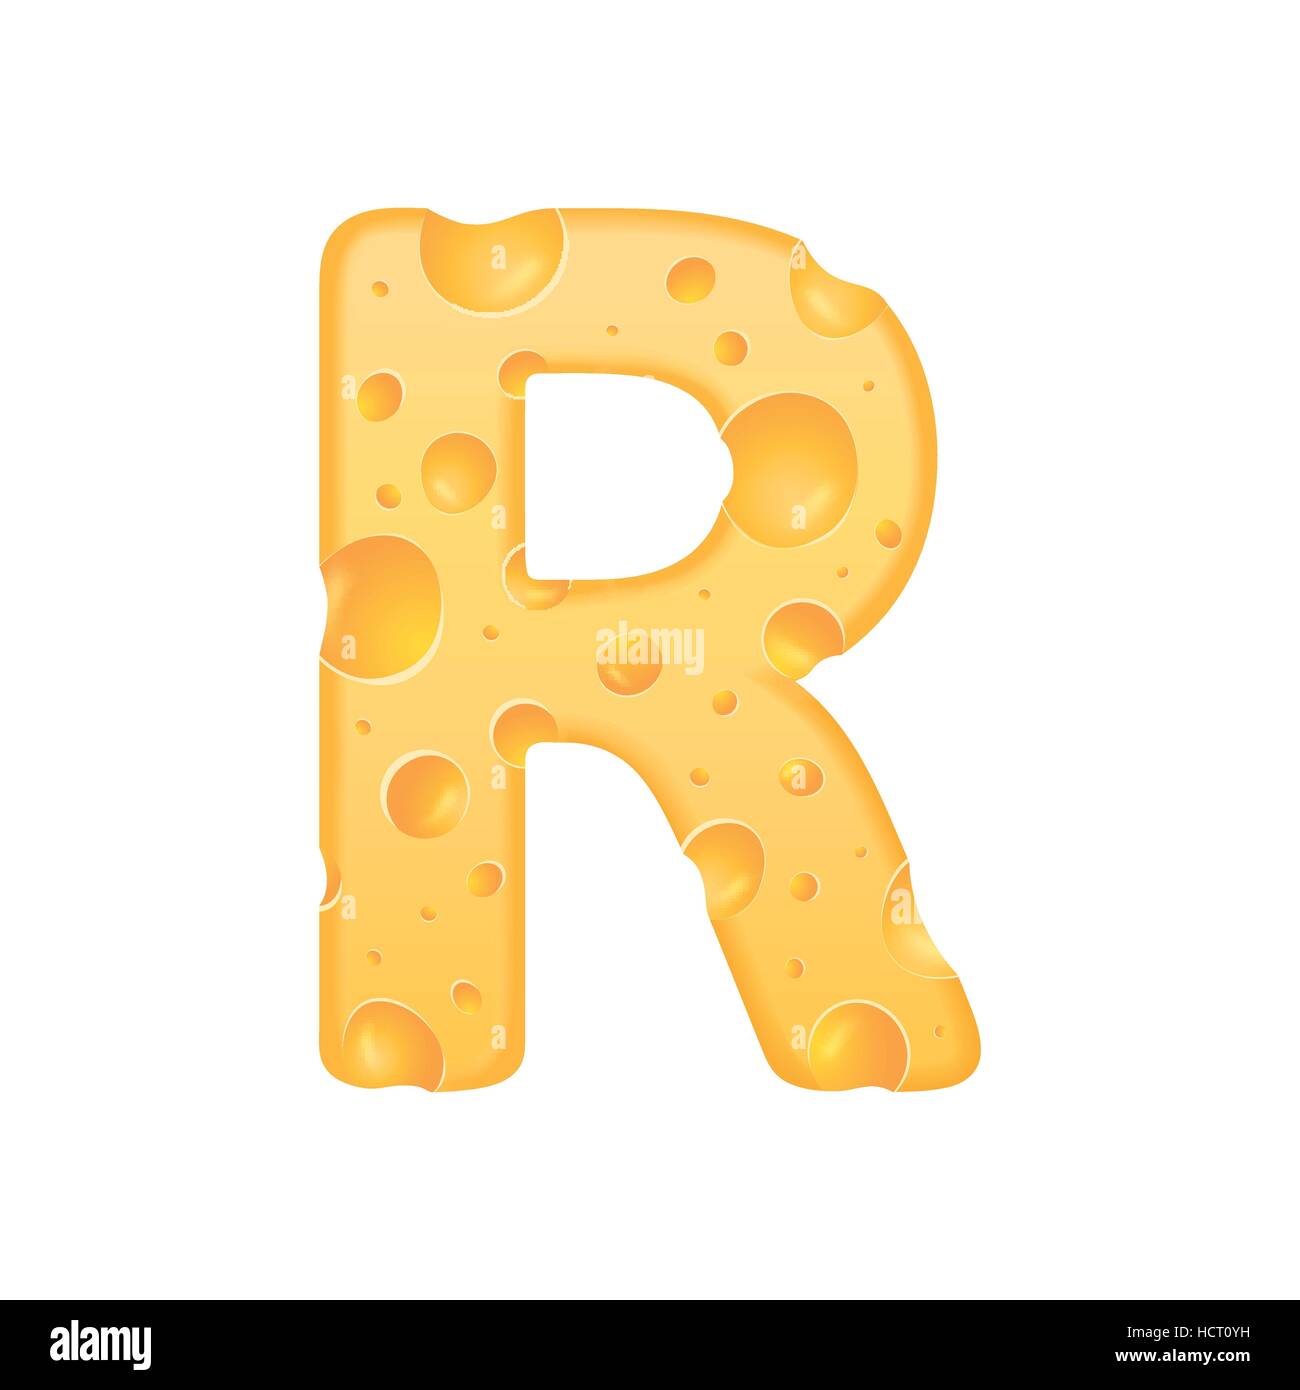 R object. Сыр на букву р. Сырные буквы. Буквы из сыра. Буква с в виде сыра.